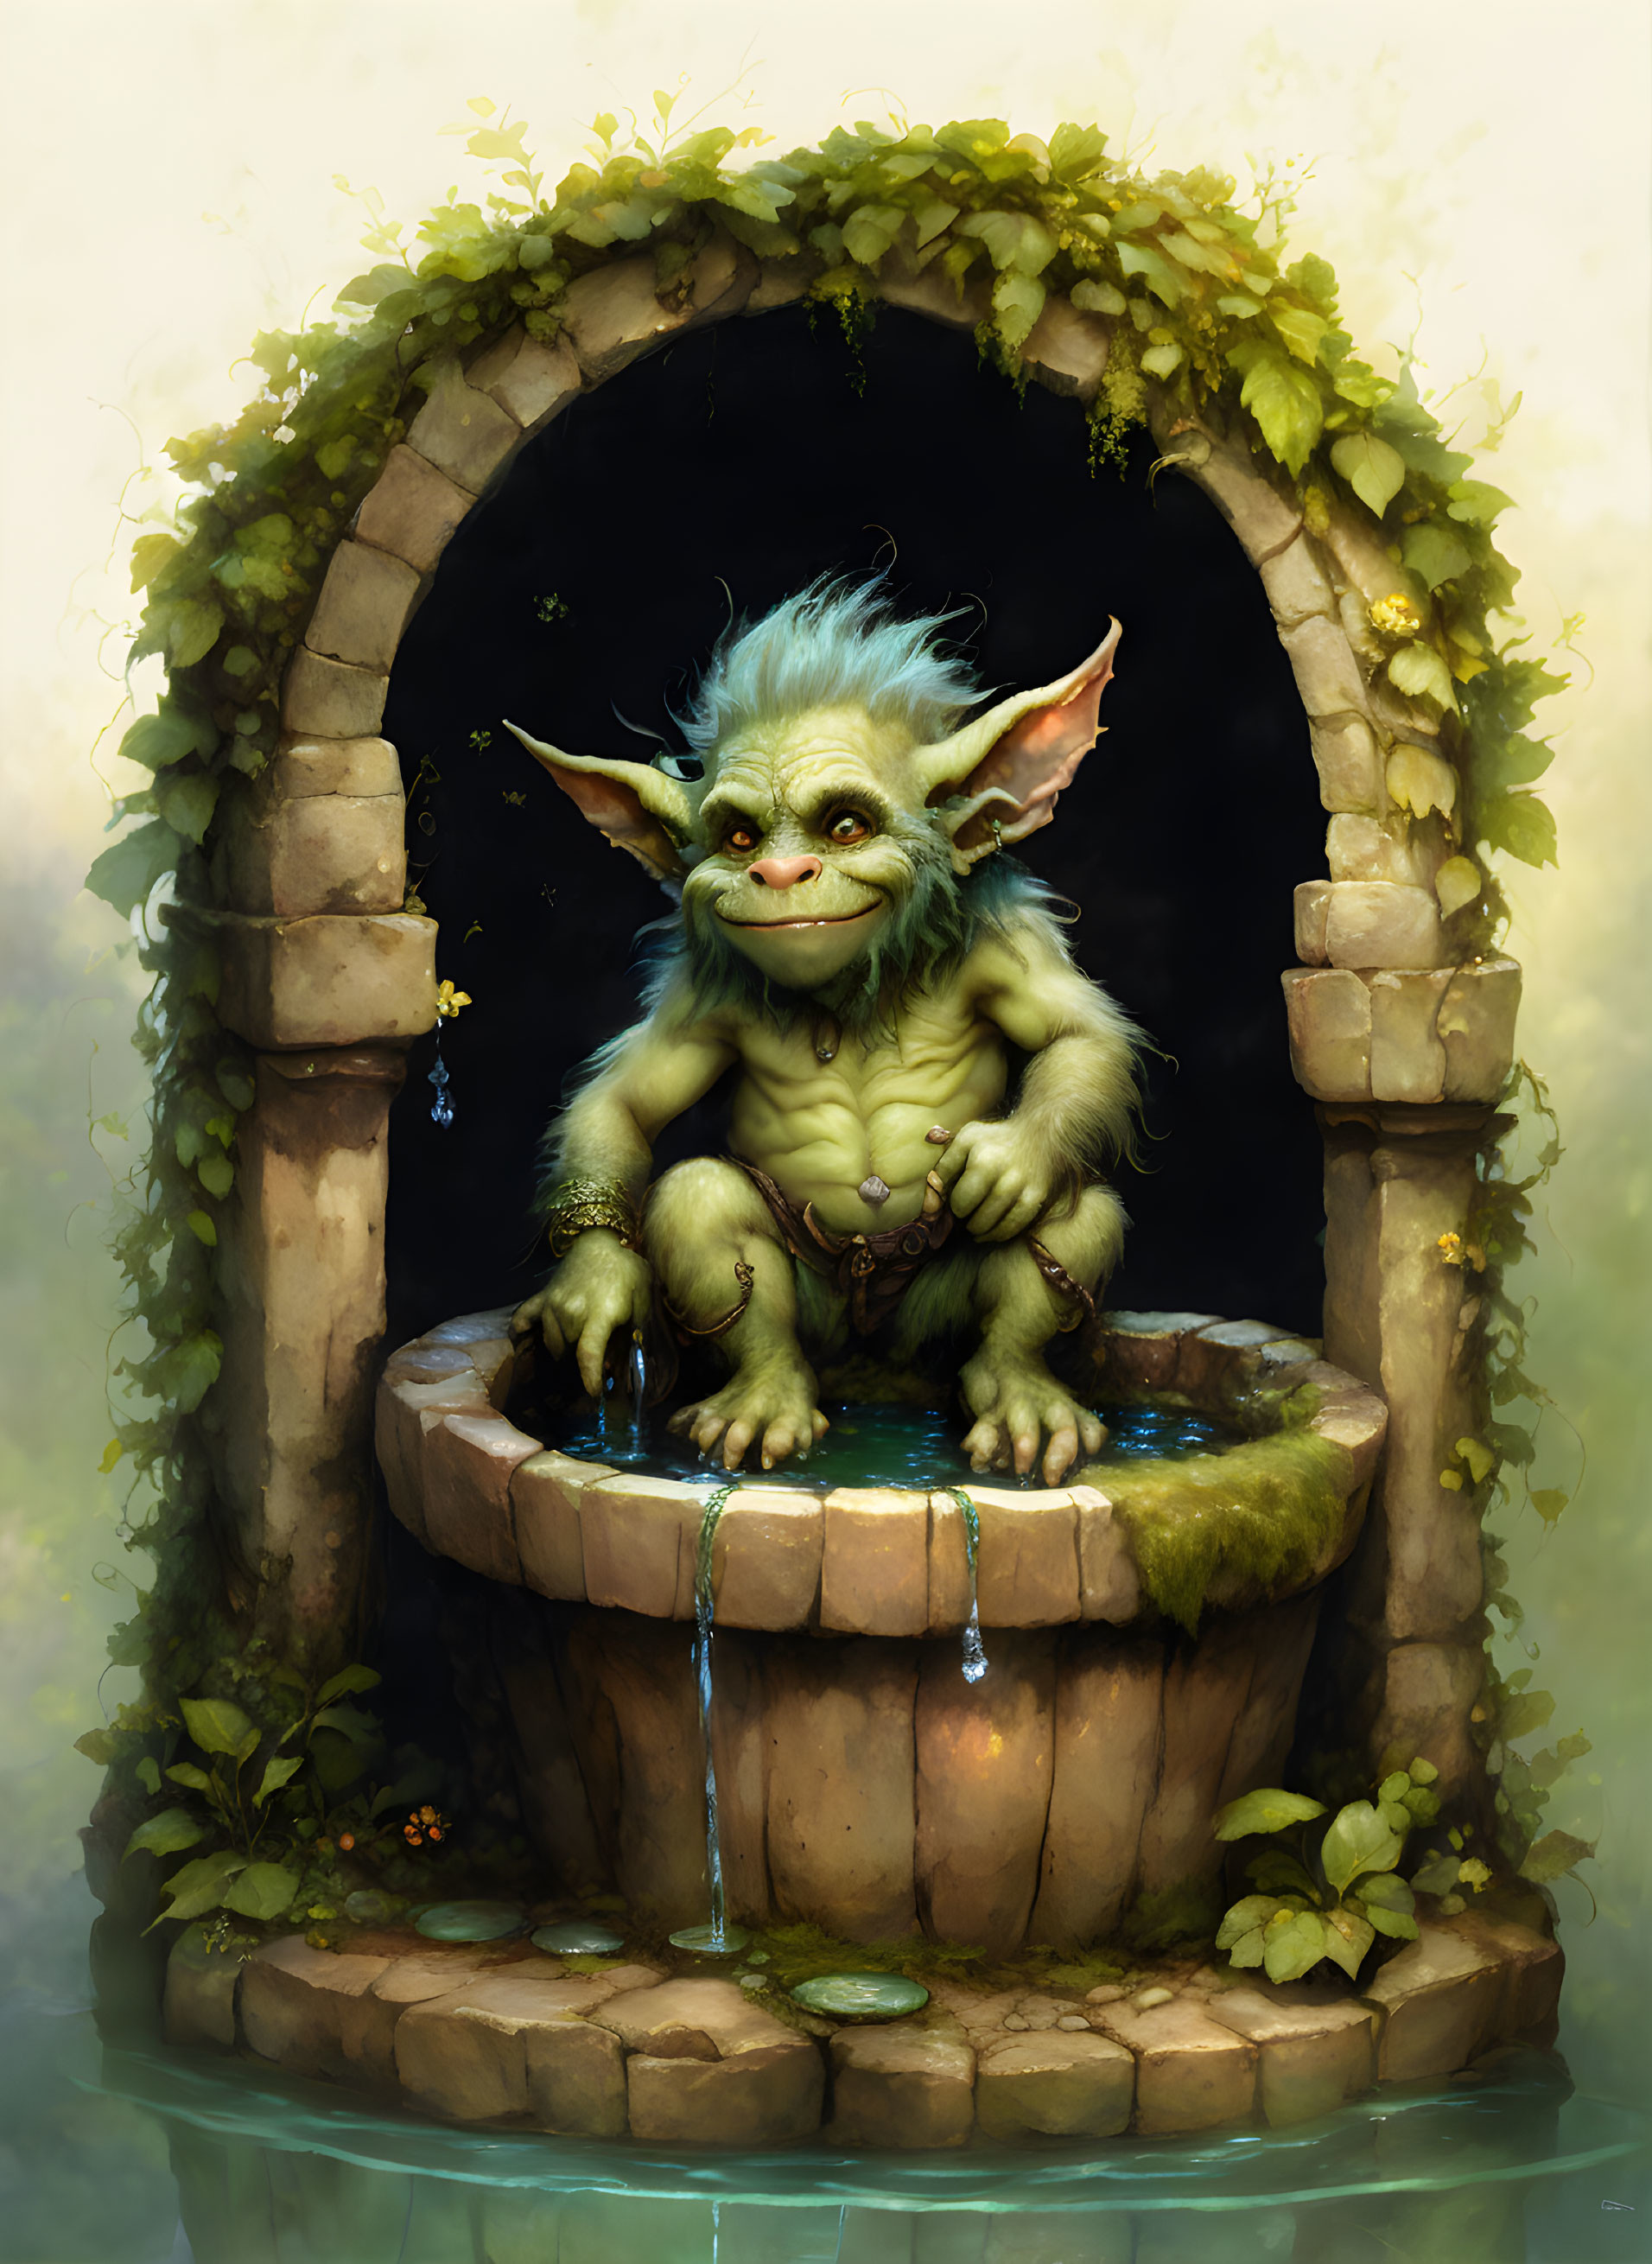  A hairy goblin troll sitting in a wishing weii